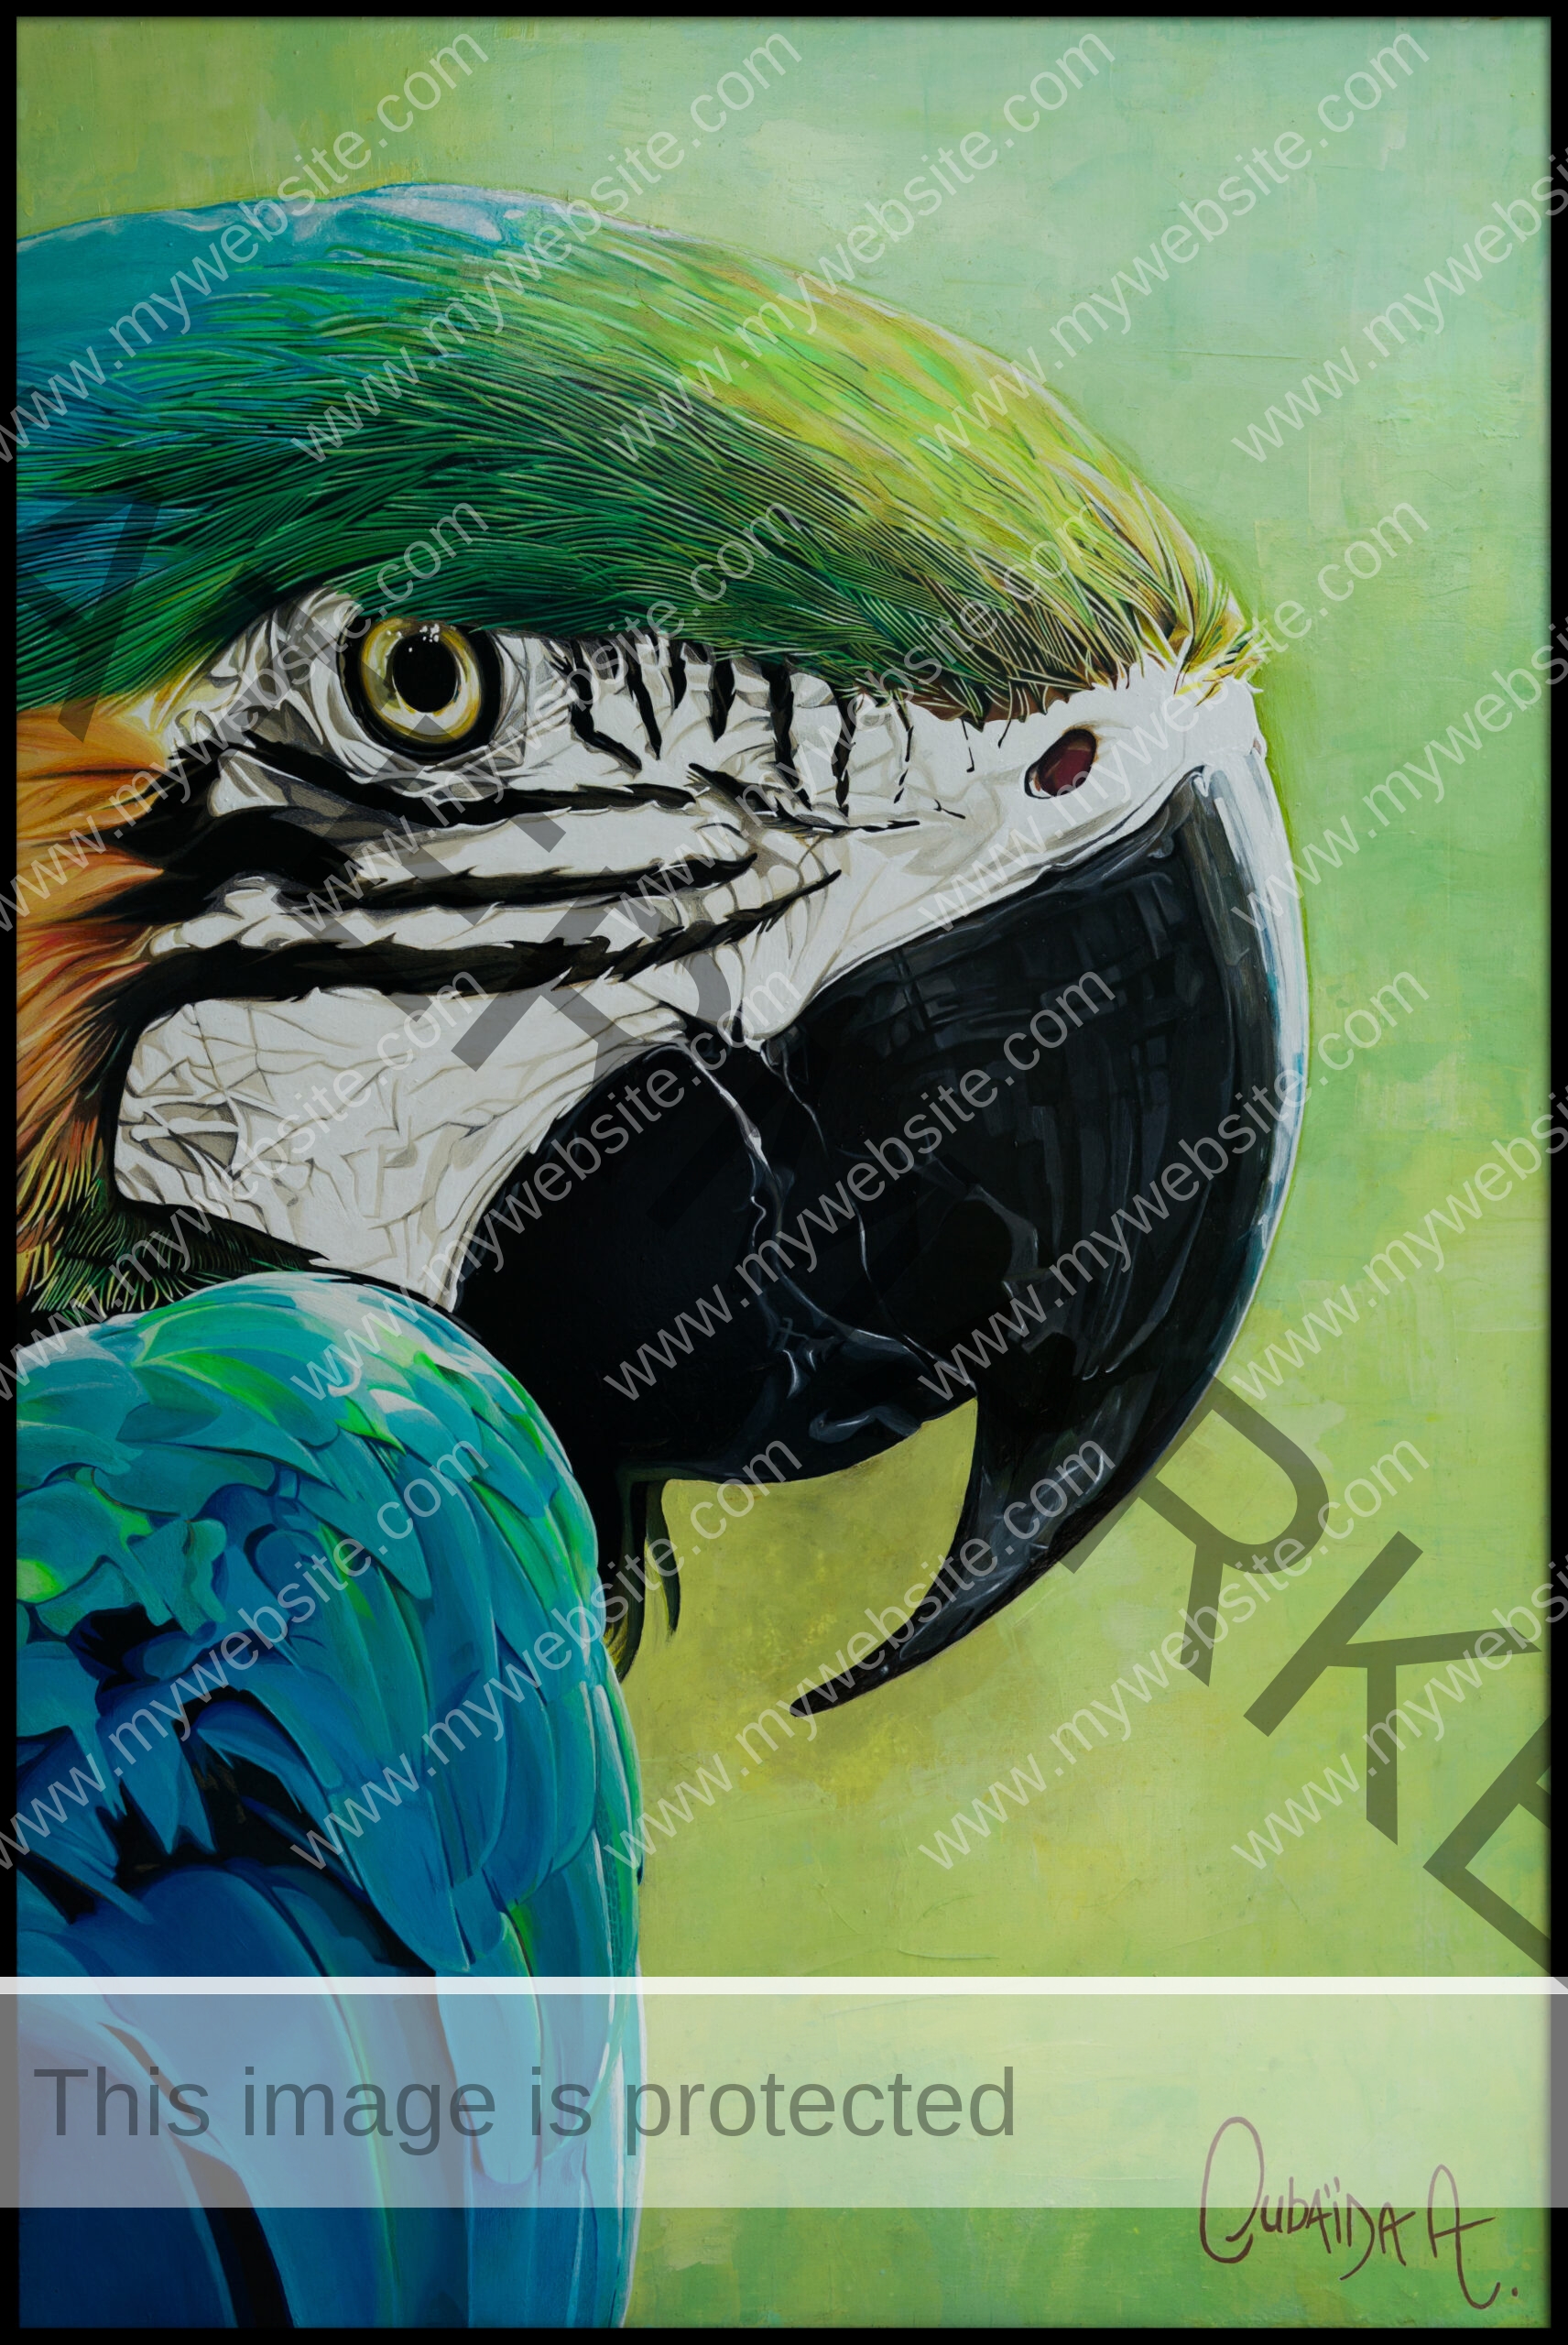 Blue macaw painting by Oubaïda Azzouz.